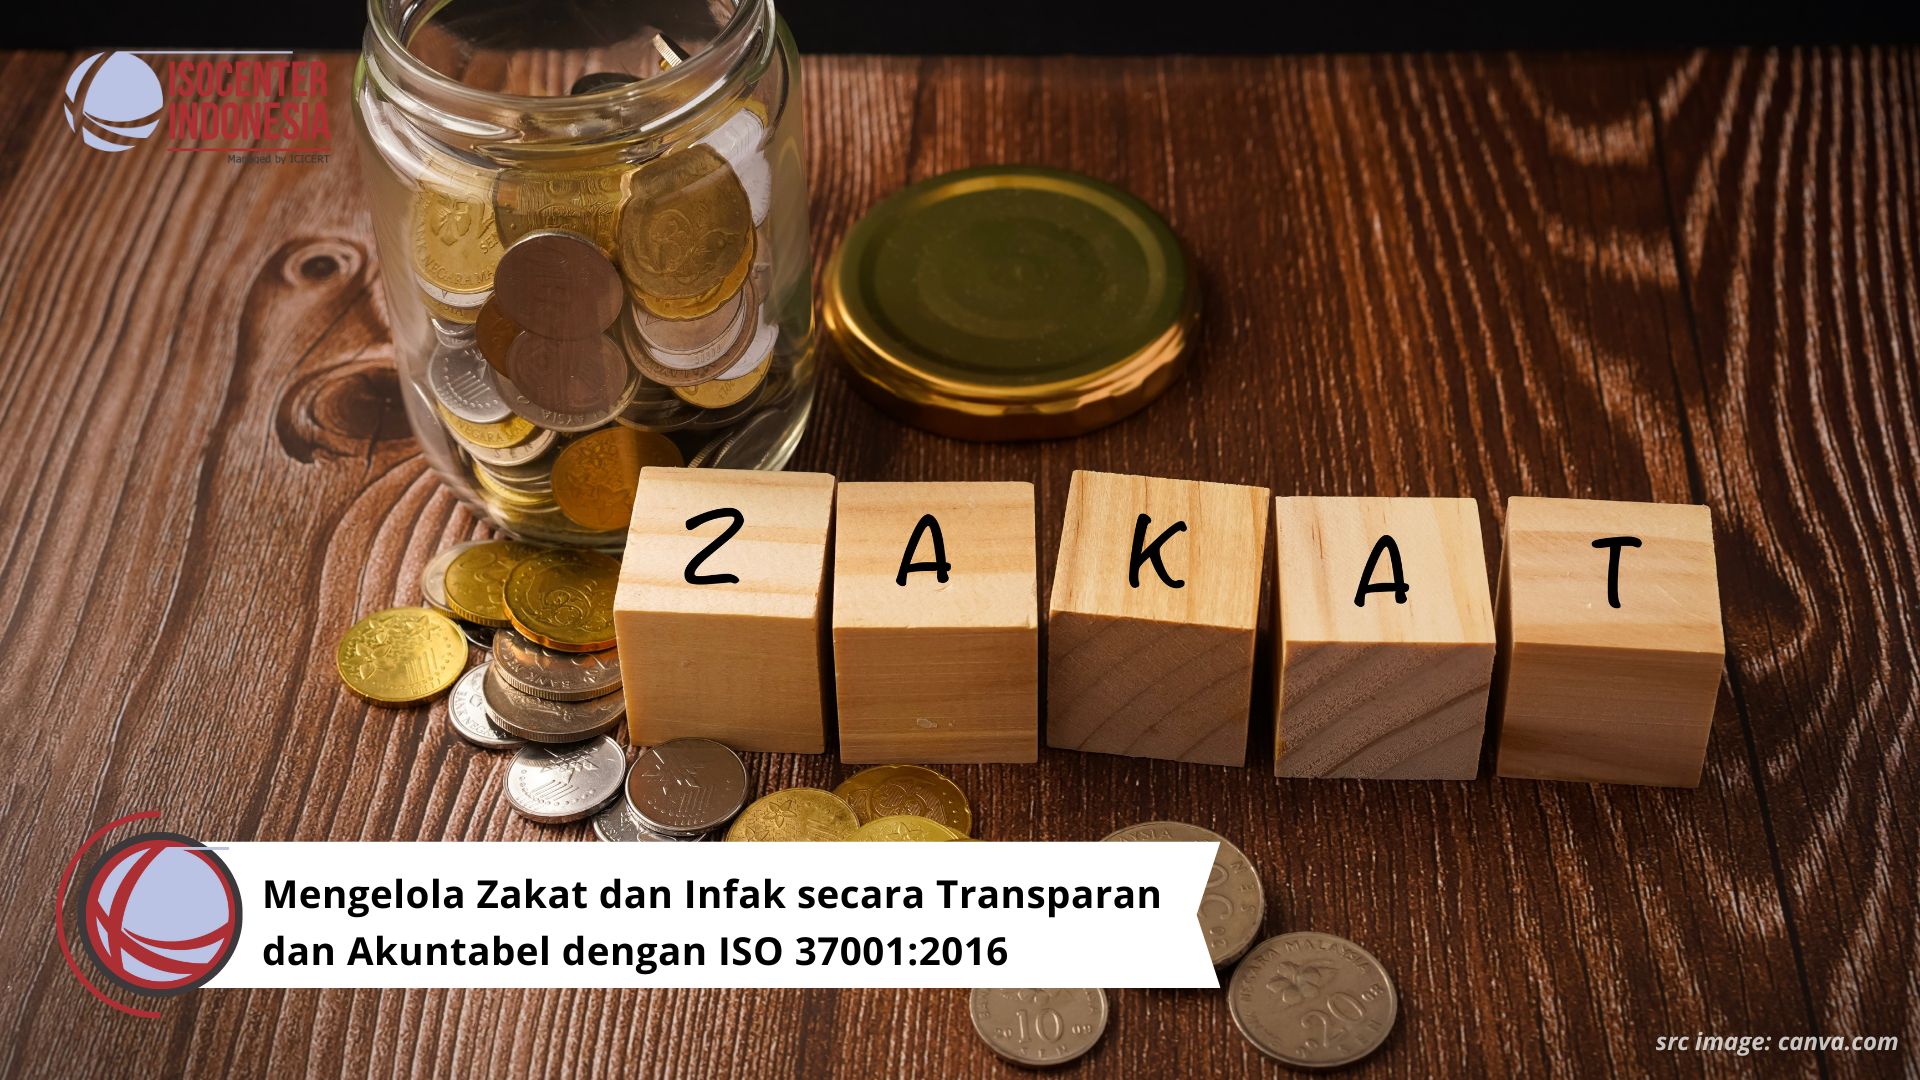 Mengelola Zakat dan Infak secara Transparan dan Akuntabel dengan ISO 37001:2016